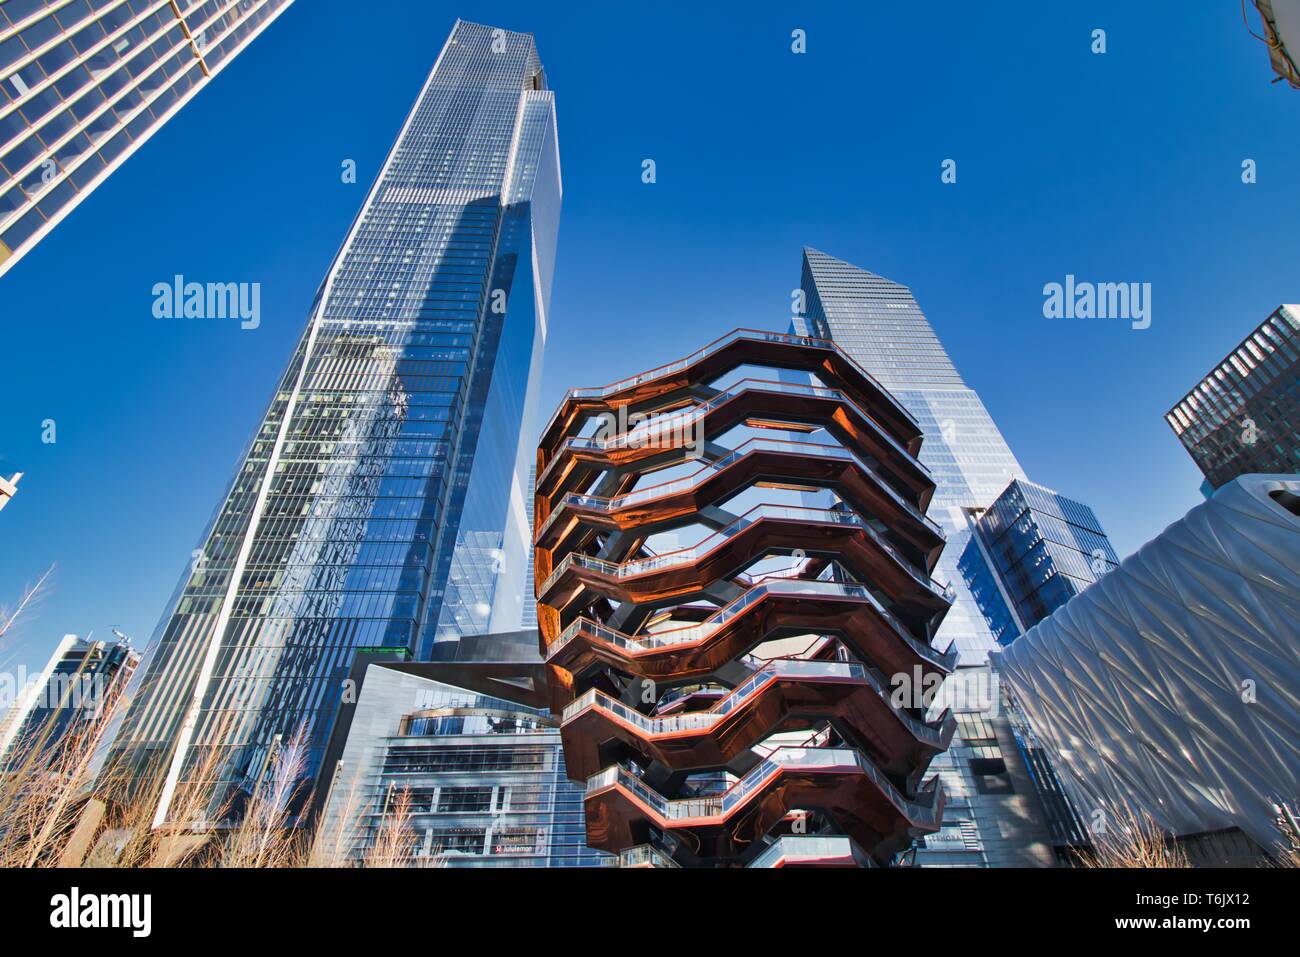 New York City, NY/USA, April 01, 2019: Das Schiff, eine moderne Kunst, wabe wie Treppe in der Mitte des Hudson Yard für Besucher geöffnet, auf einer s Stockfoto